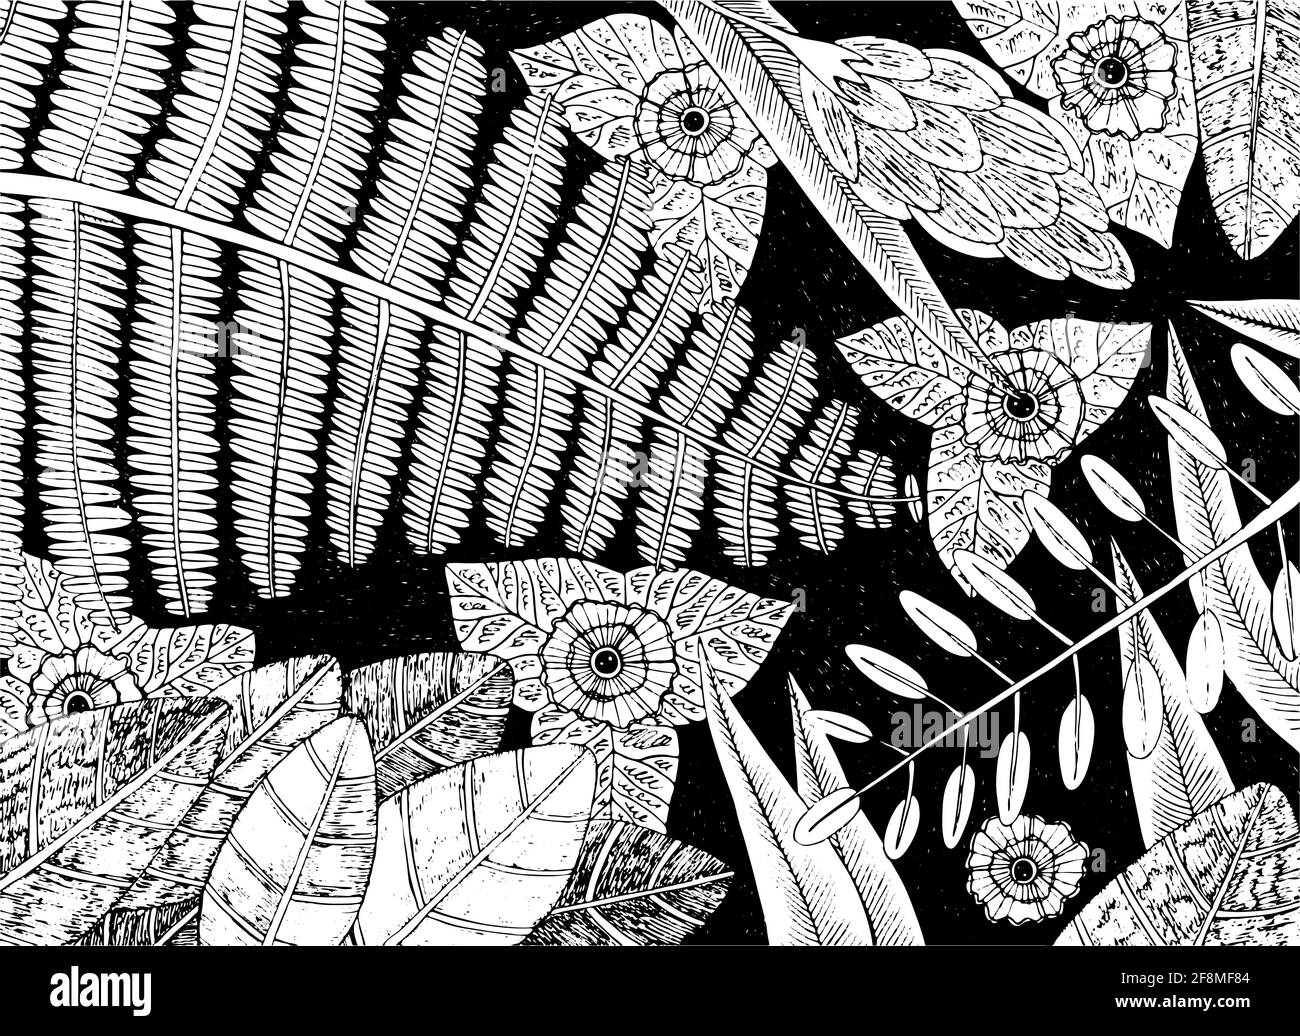 Tropische Pflanzen - florale Skizze Illustration. Regenwald Blumen Hintergrund. Dschungel exotische Blätter und Äste. Schwarz-Weiß-Kunst. Vektorgrafik Stock Vektor